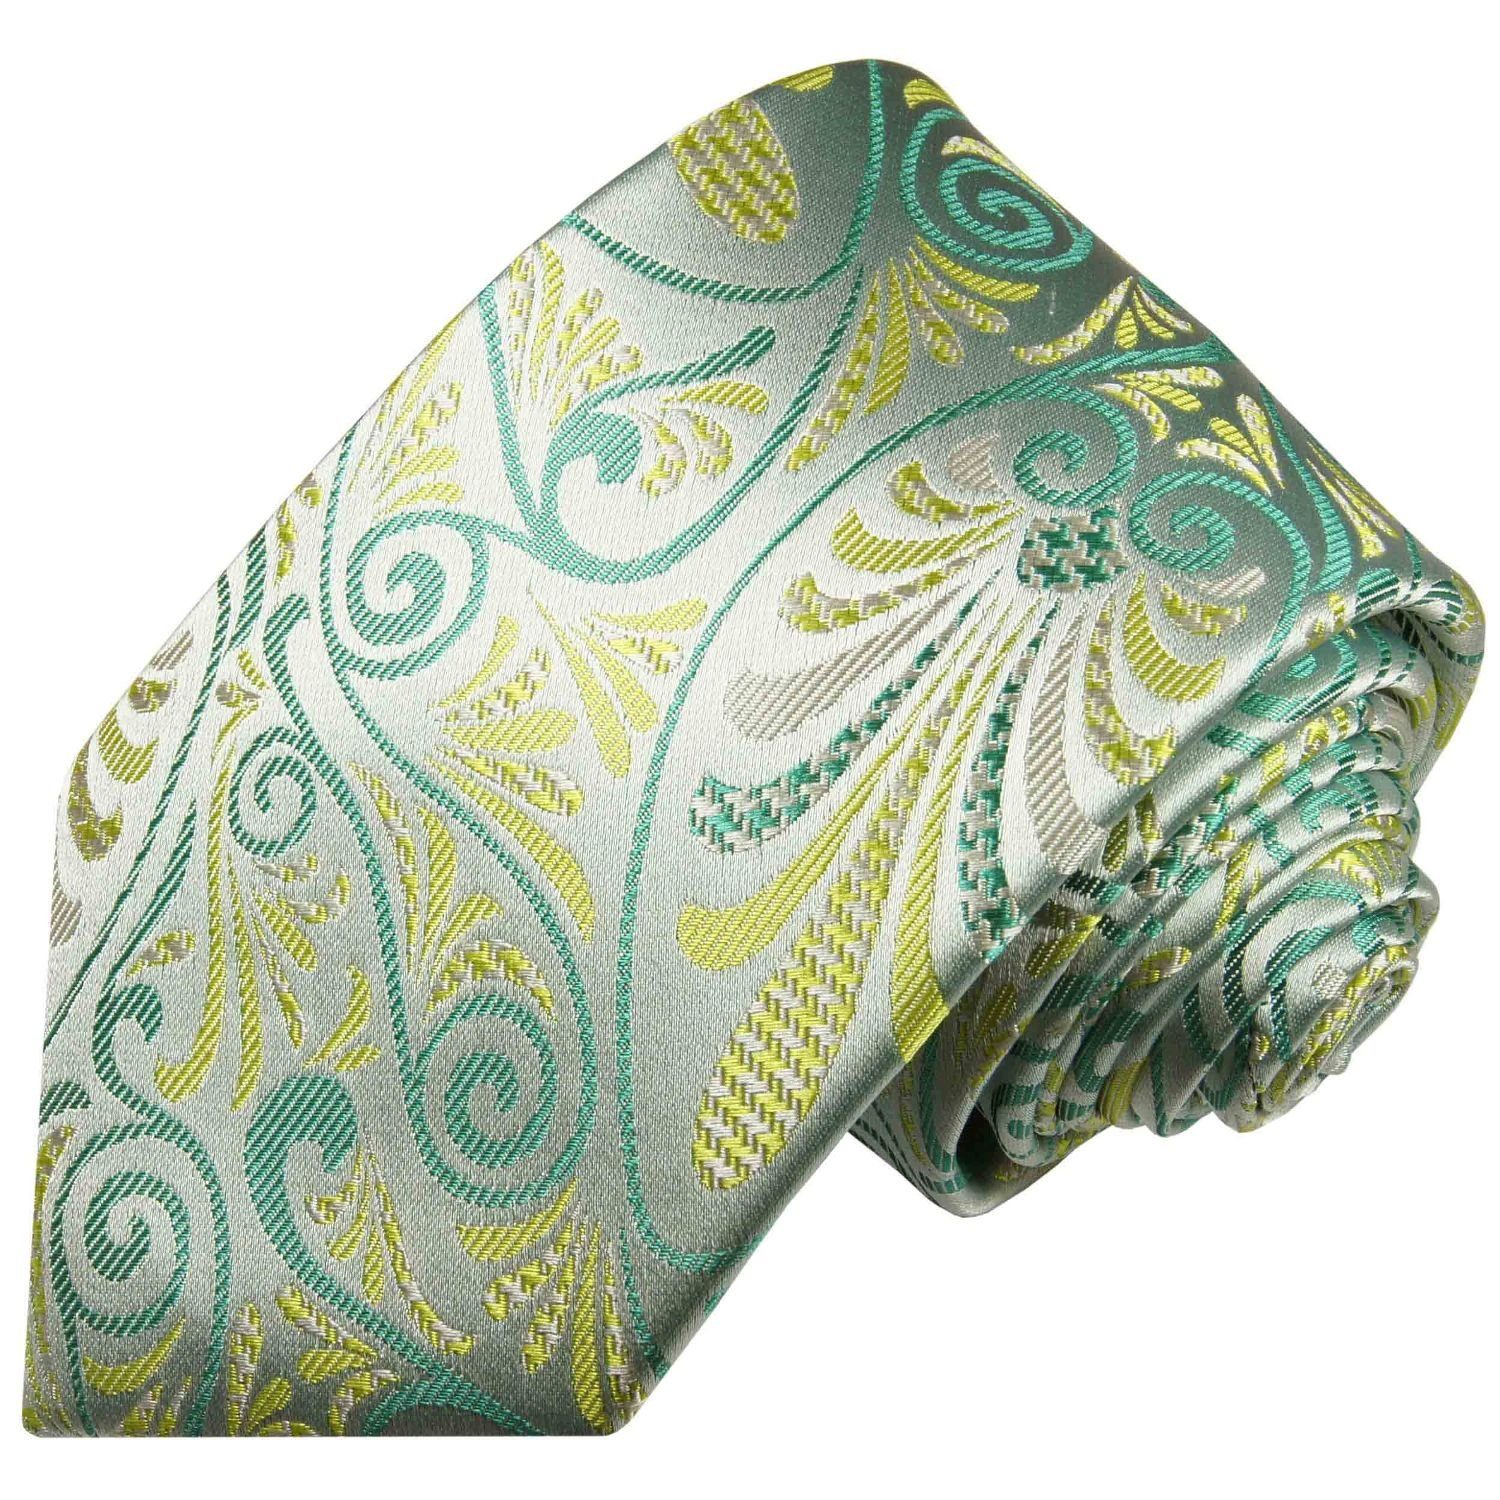 Paul Malone Krawatte Designer Seidenkrawatte Herren Schlips modern bunt floral 100% Seide Schmal (6cm), gelb grün 491